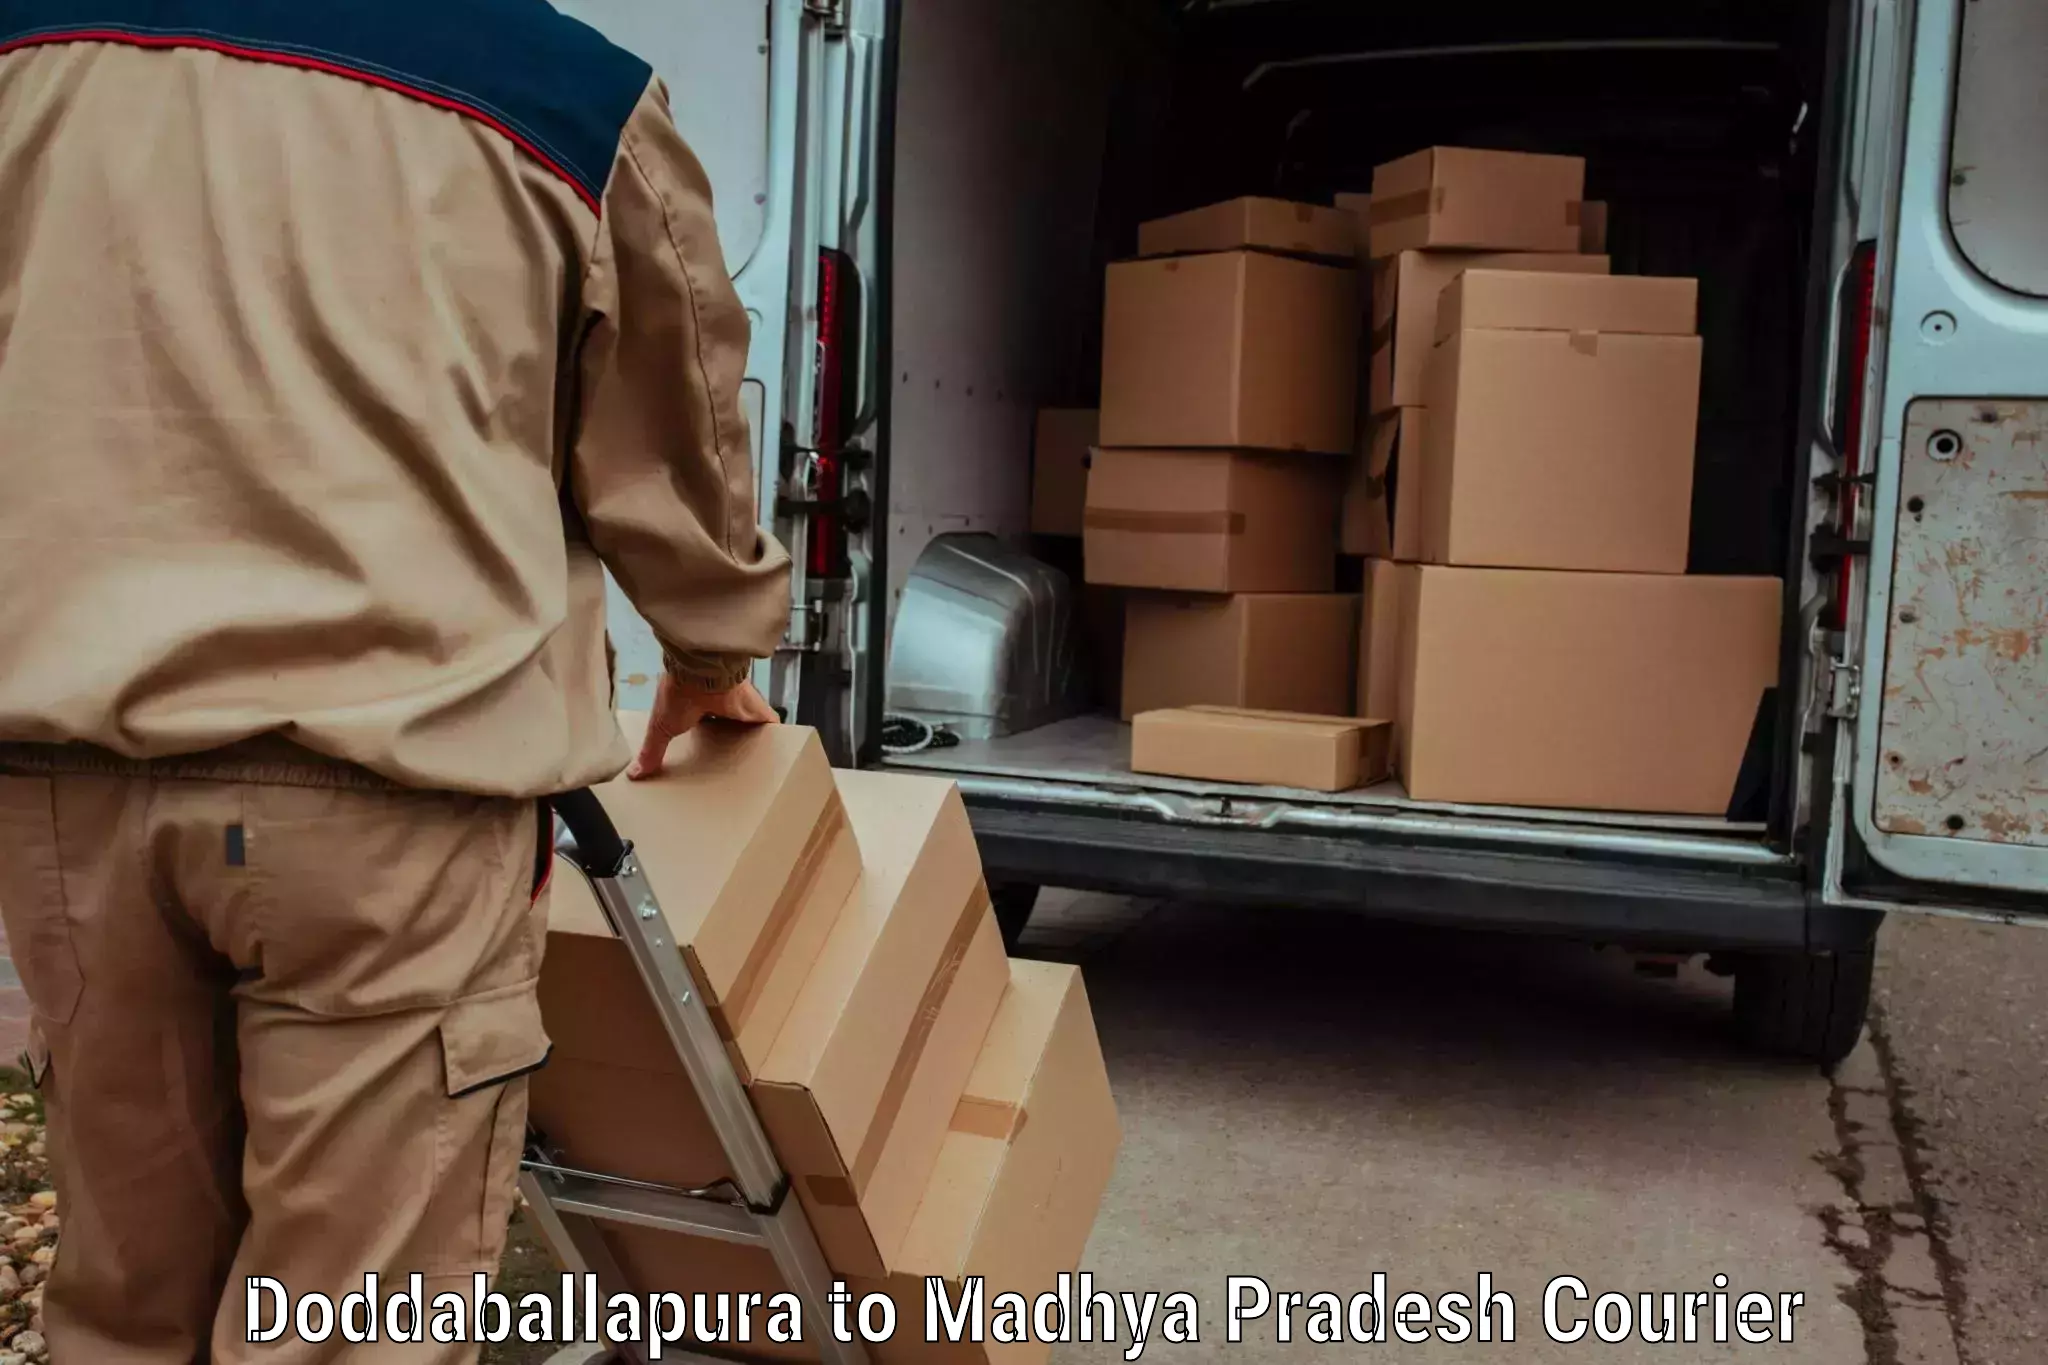 Efficient parcel transport in Doddaballapura to Ashoknagar